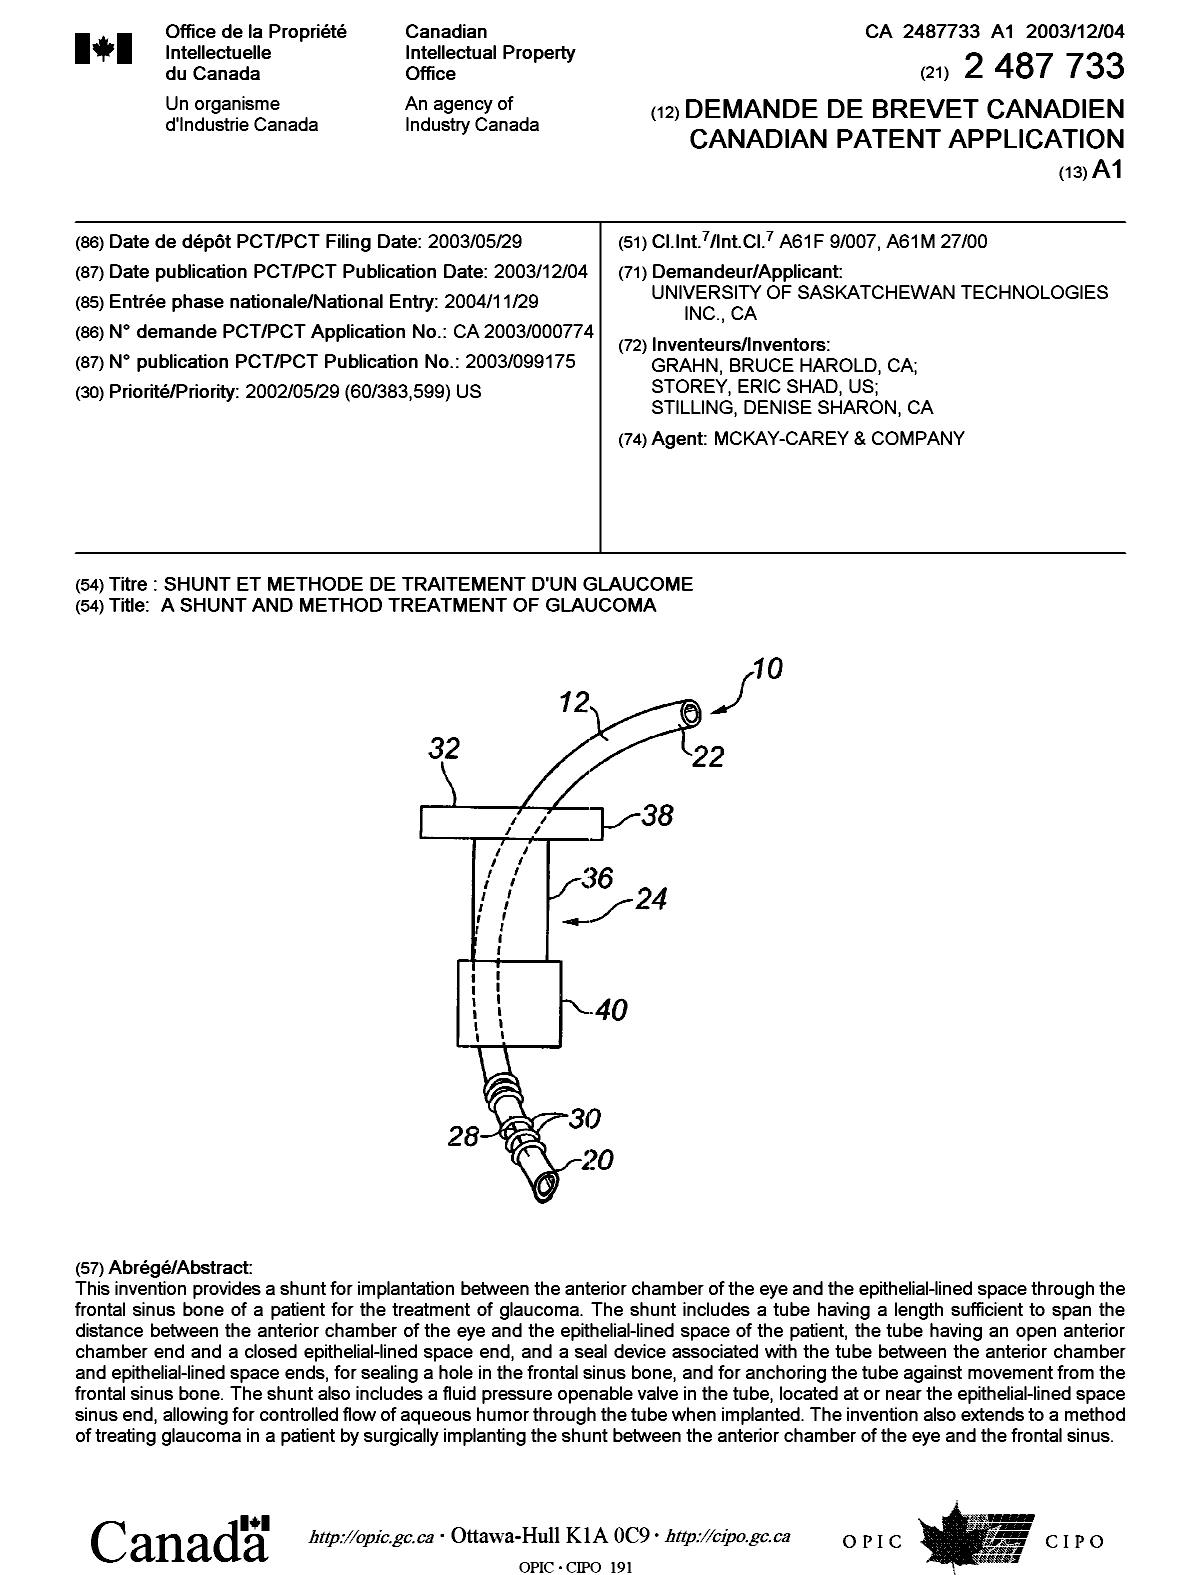 Document de brevet canadien 2487733. Page couverture 20050209. Image 1 de 1